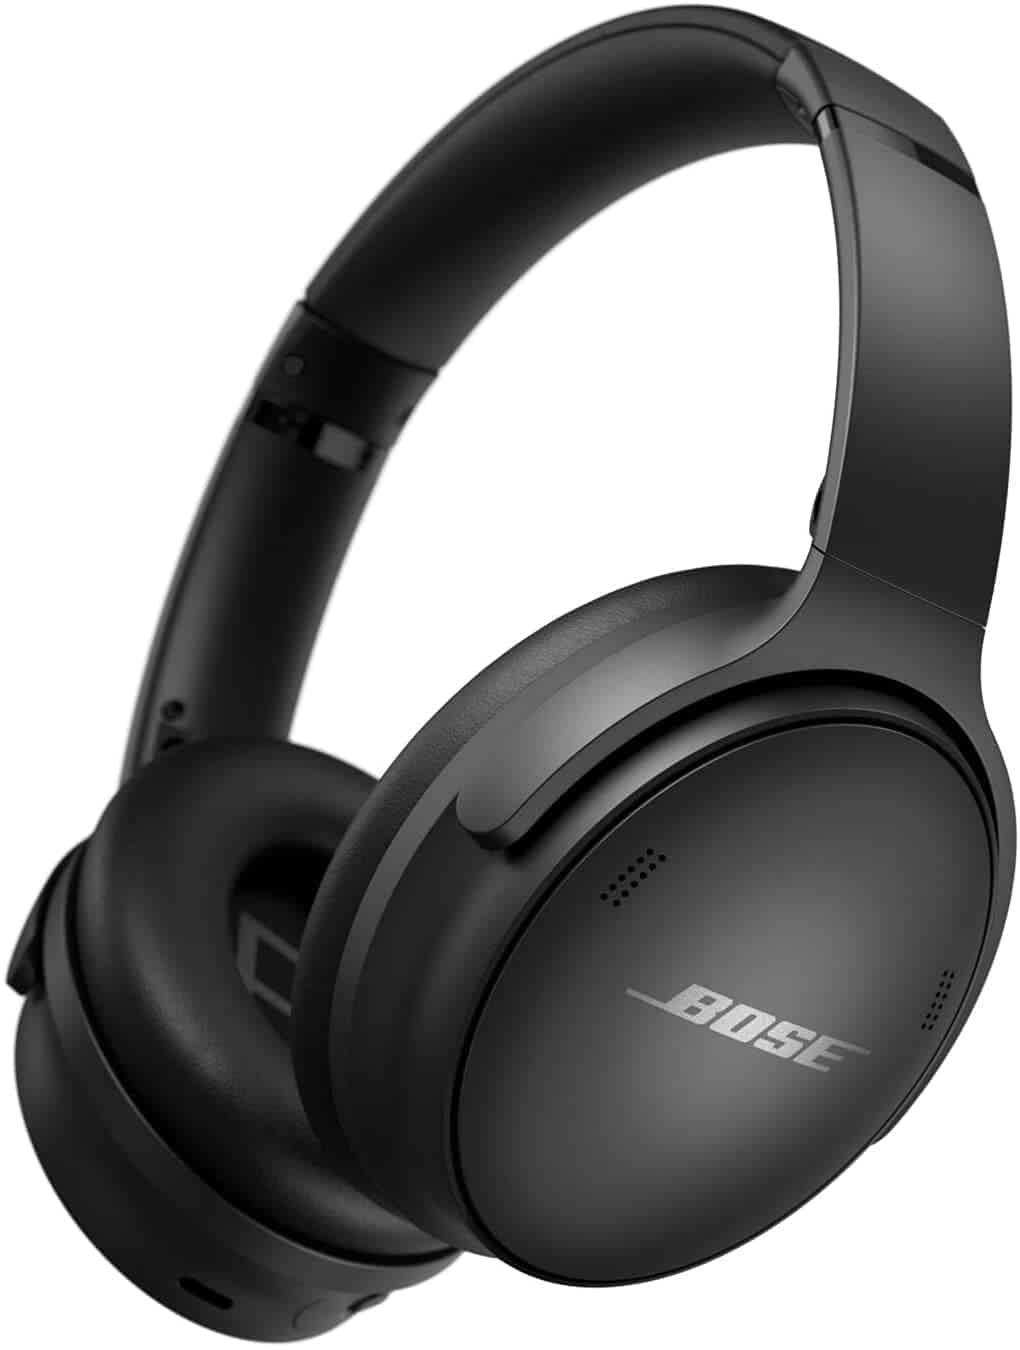 Deal Alert: Bose QuietComfort 45 headphones $50 cheaper today